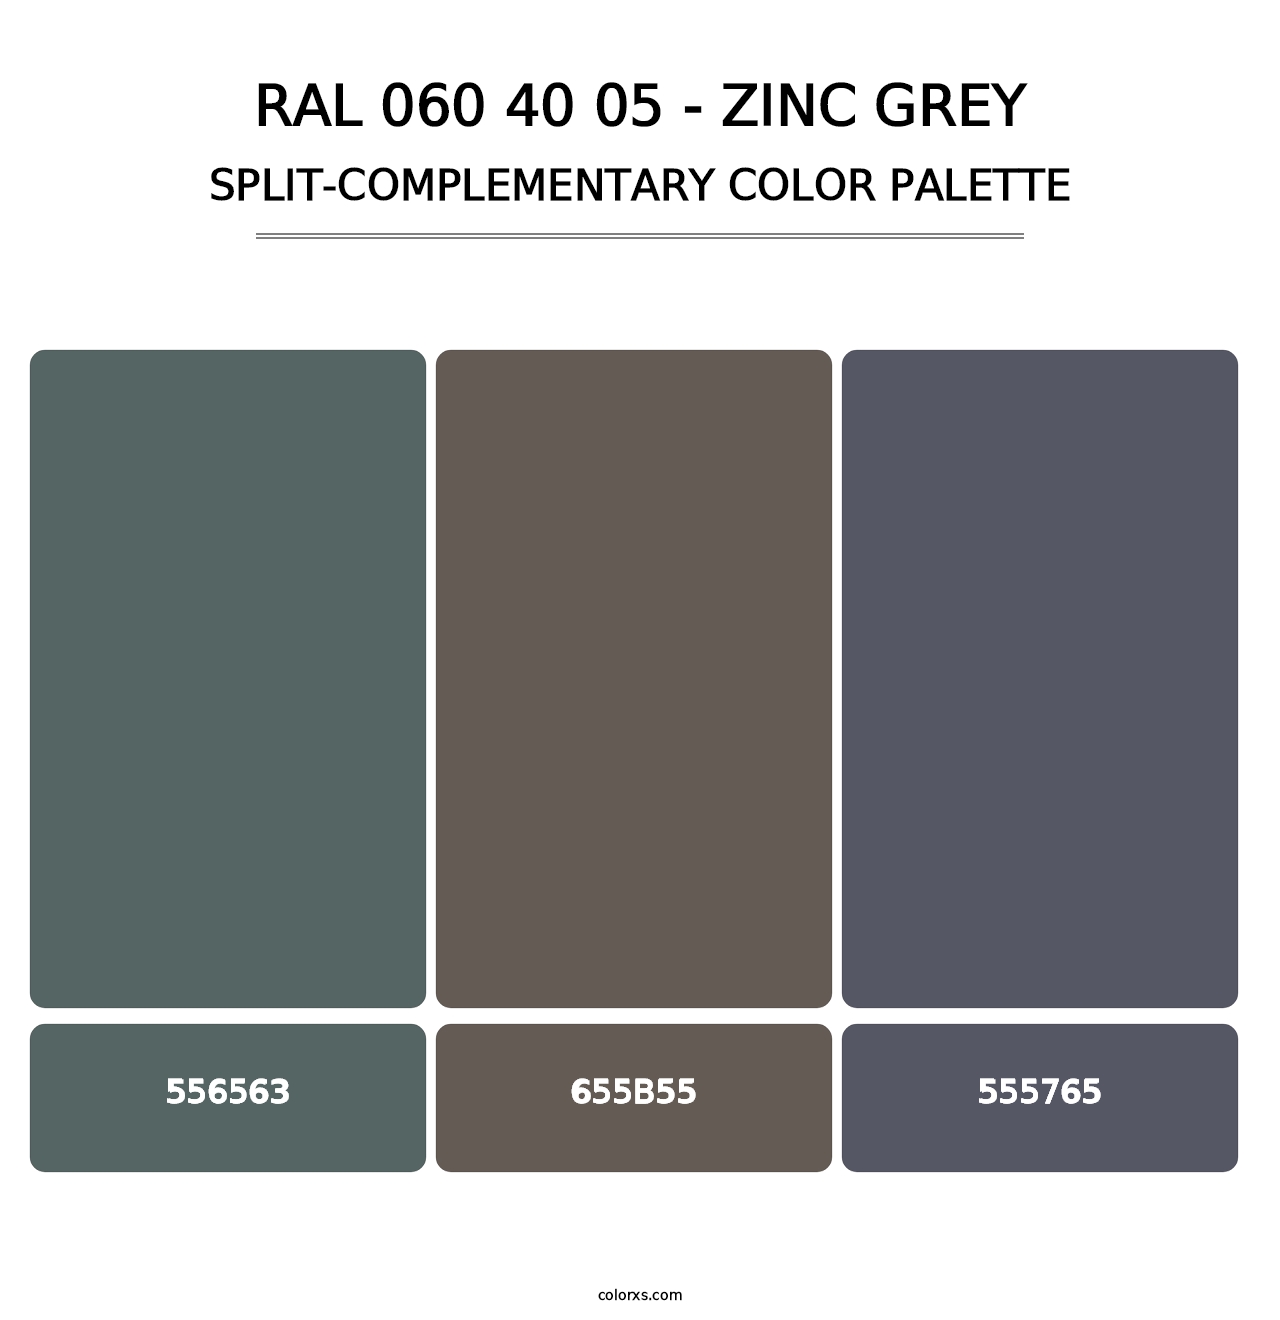 RAL 060 40 05 - Zinc Grey - Split-Complementary Color Palette